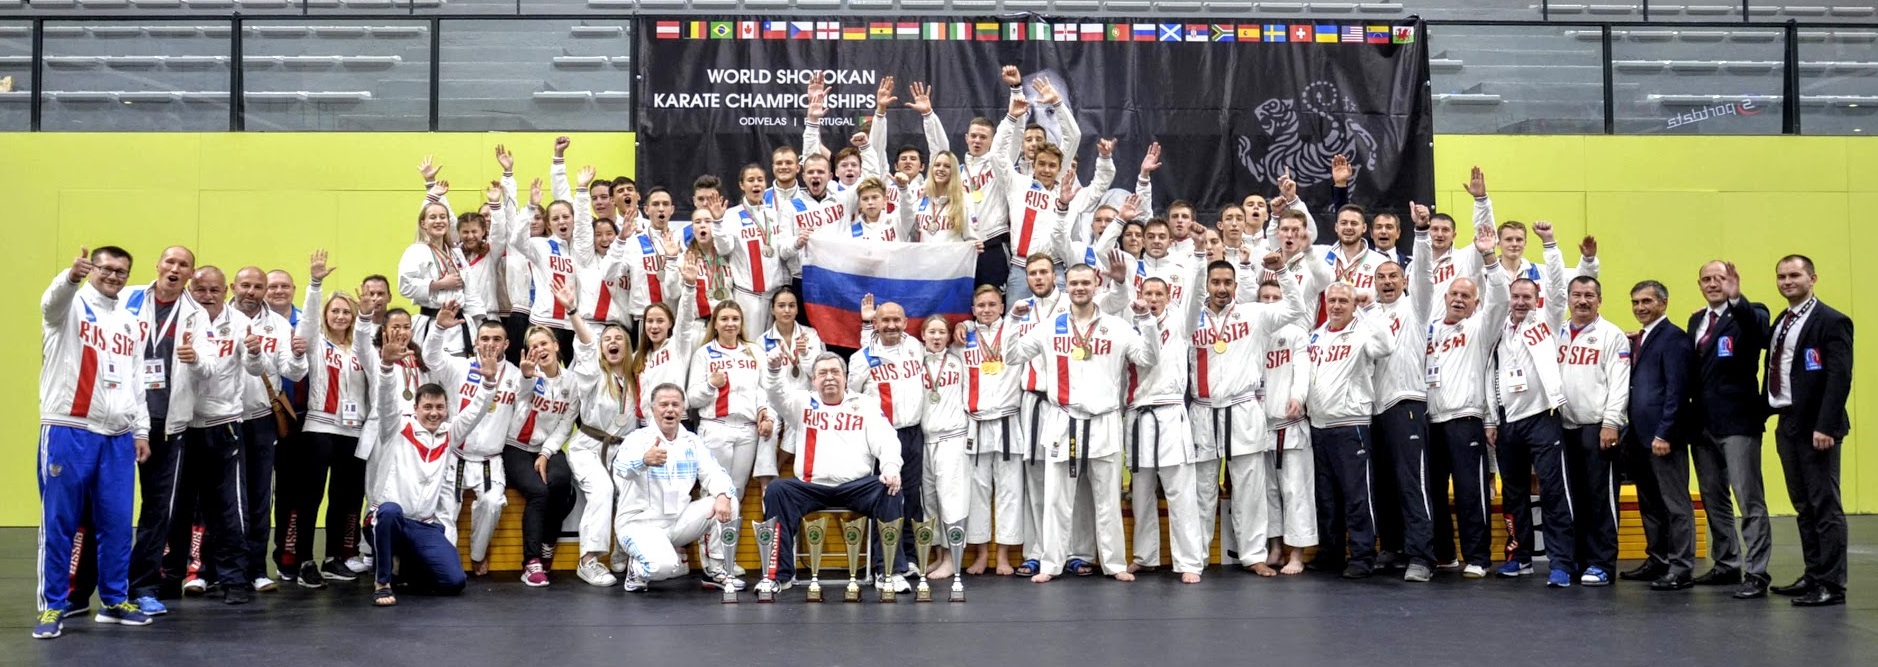 Уверенная победа российских спортсменов на Чемпионате Мира по Сётокан (WSKA)